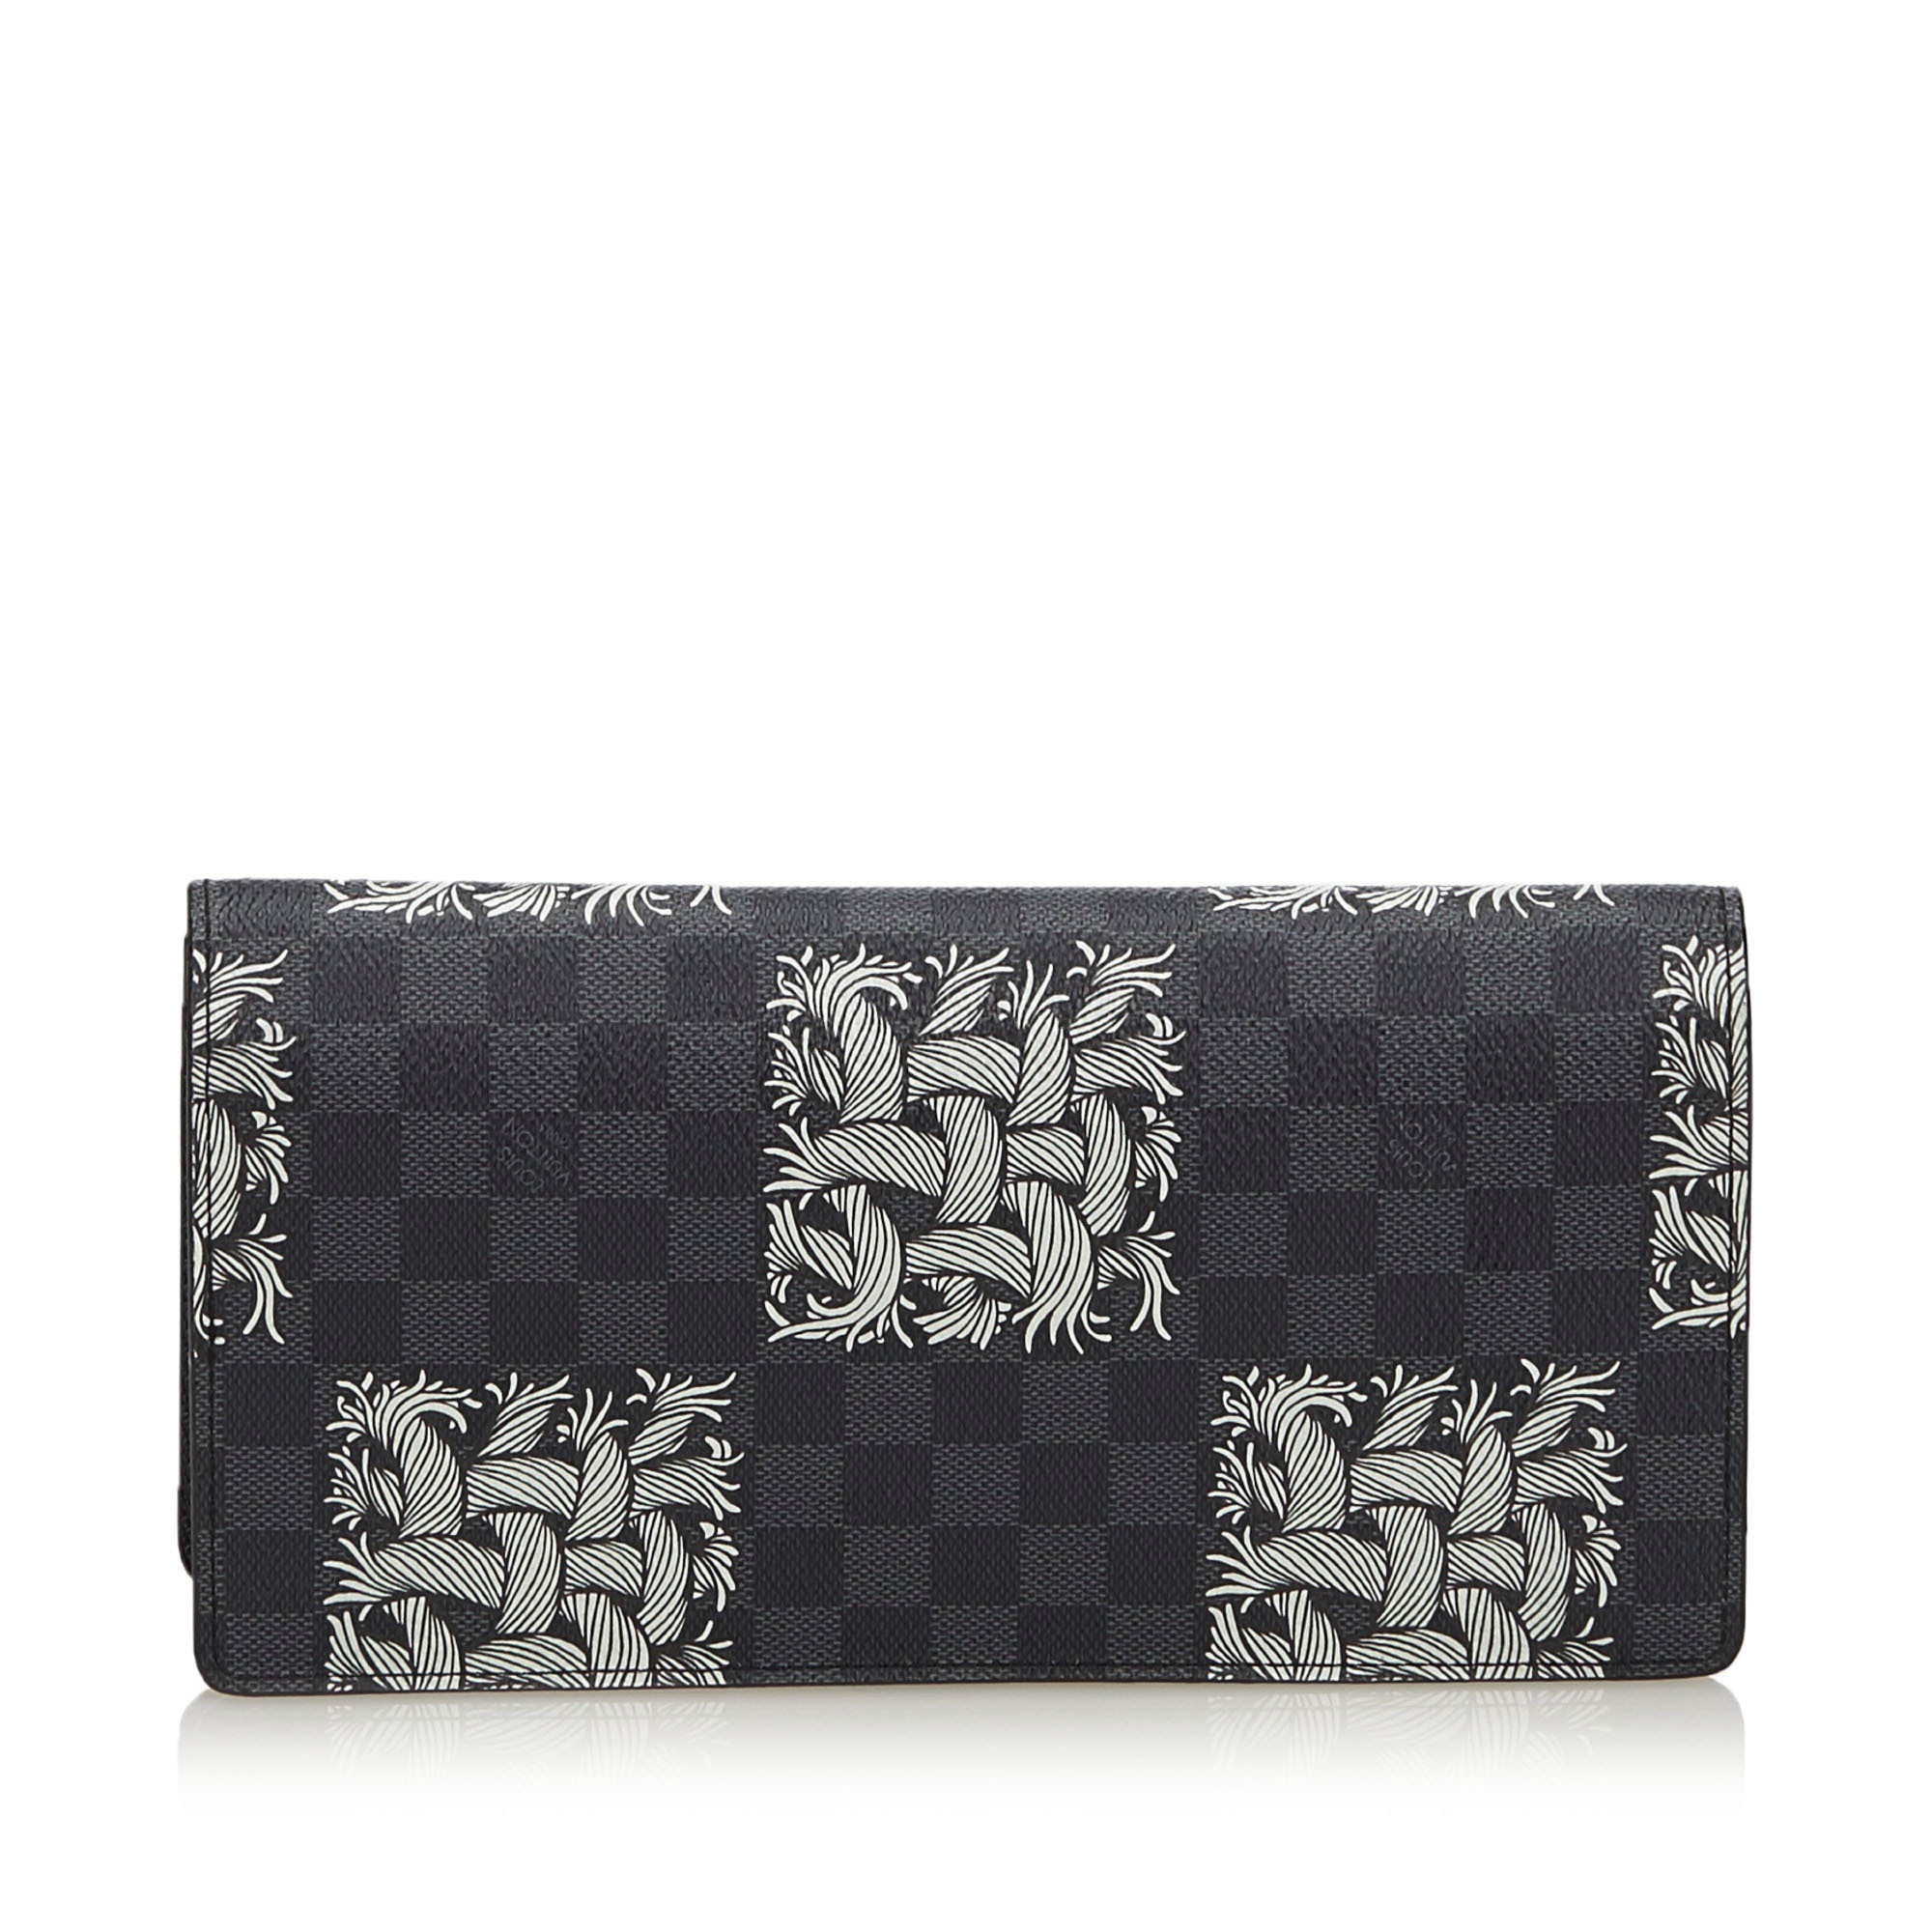 Louis Vuitton Black damier graphite portefeuille brazza christopher nemeth wallet - Harvey Nichols